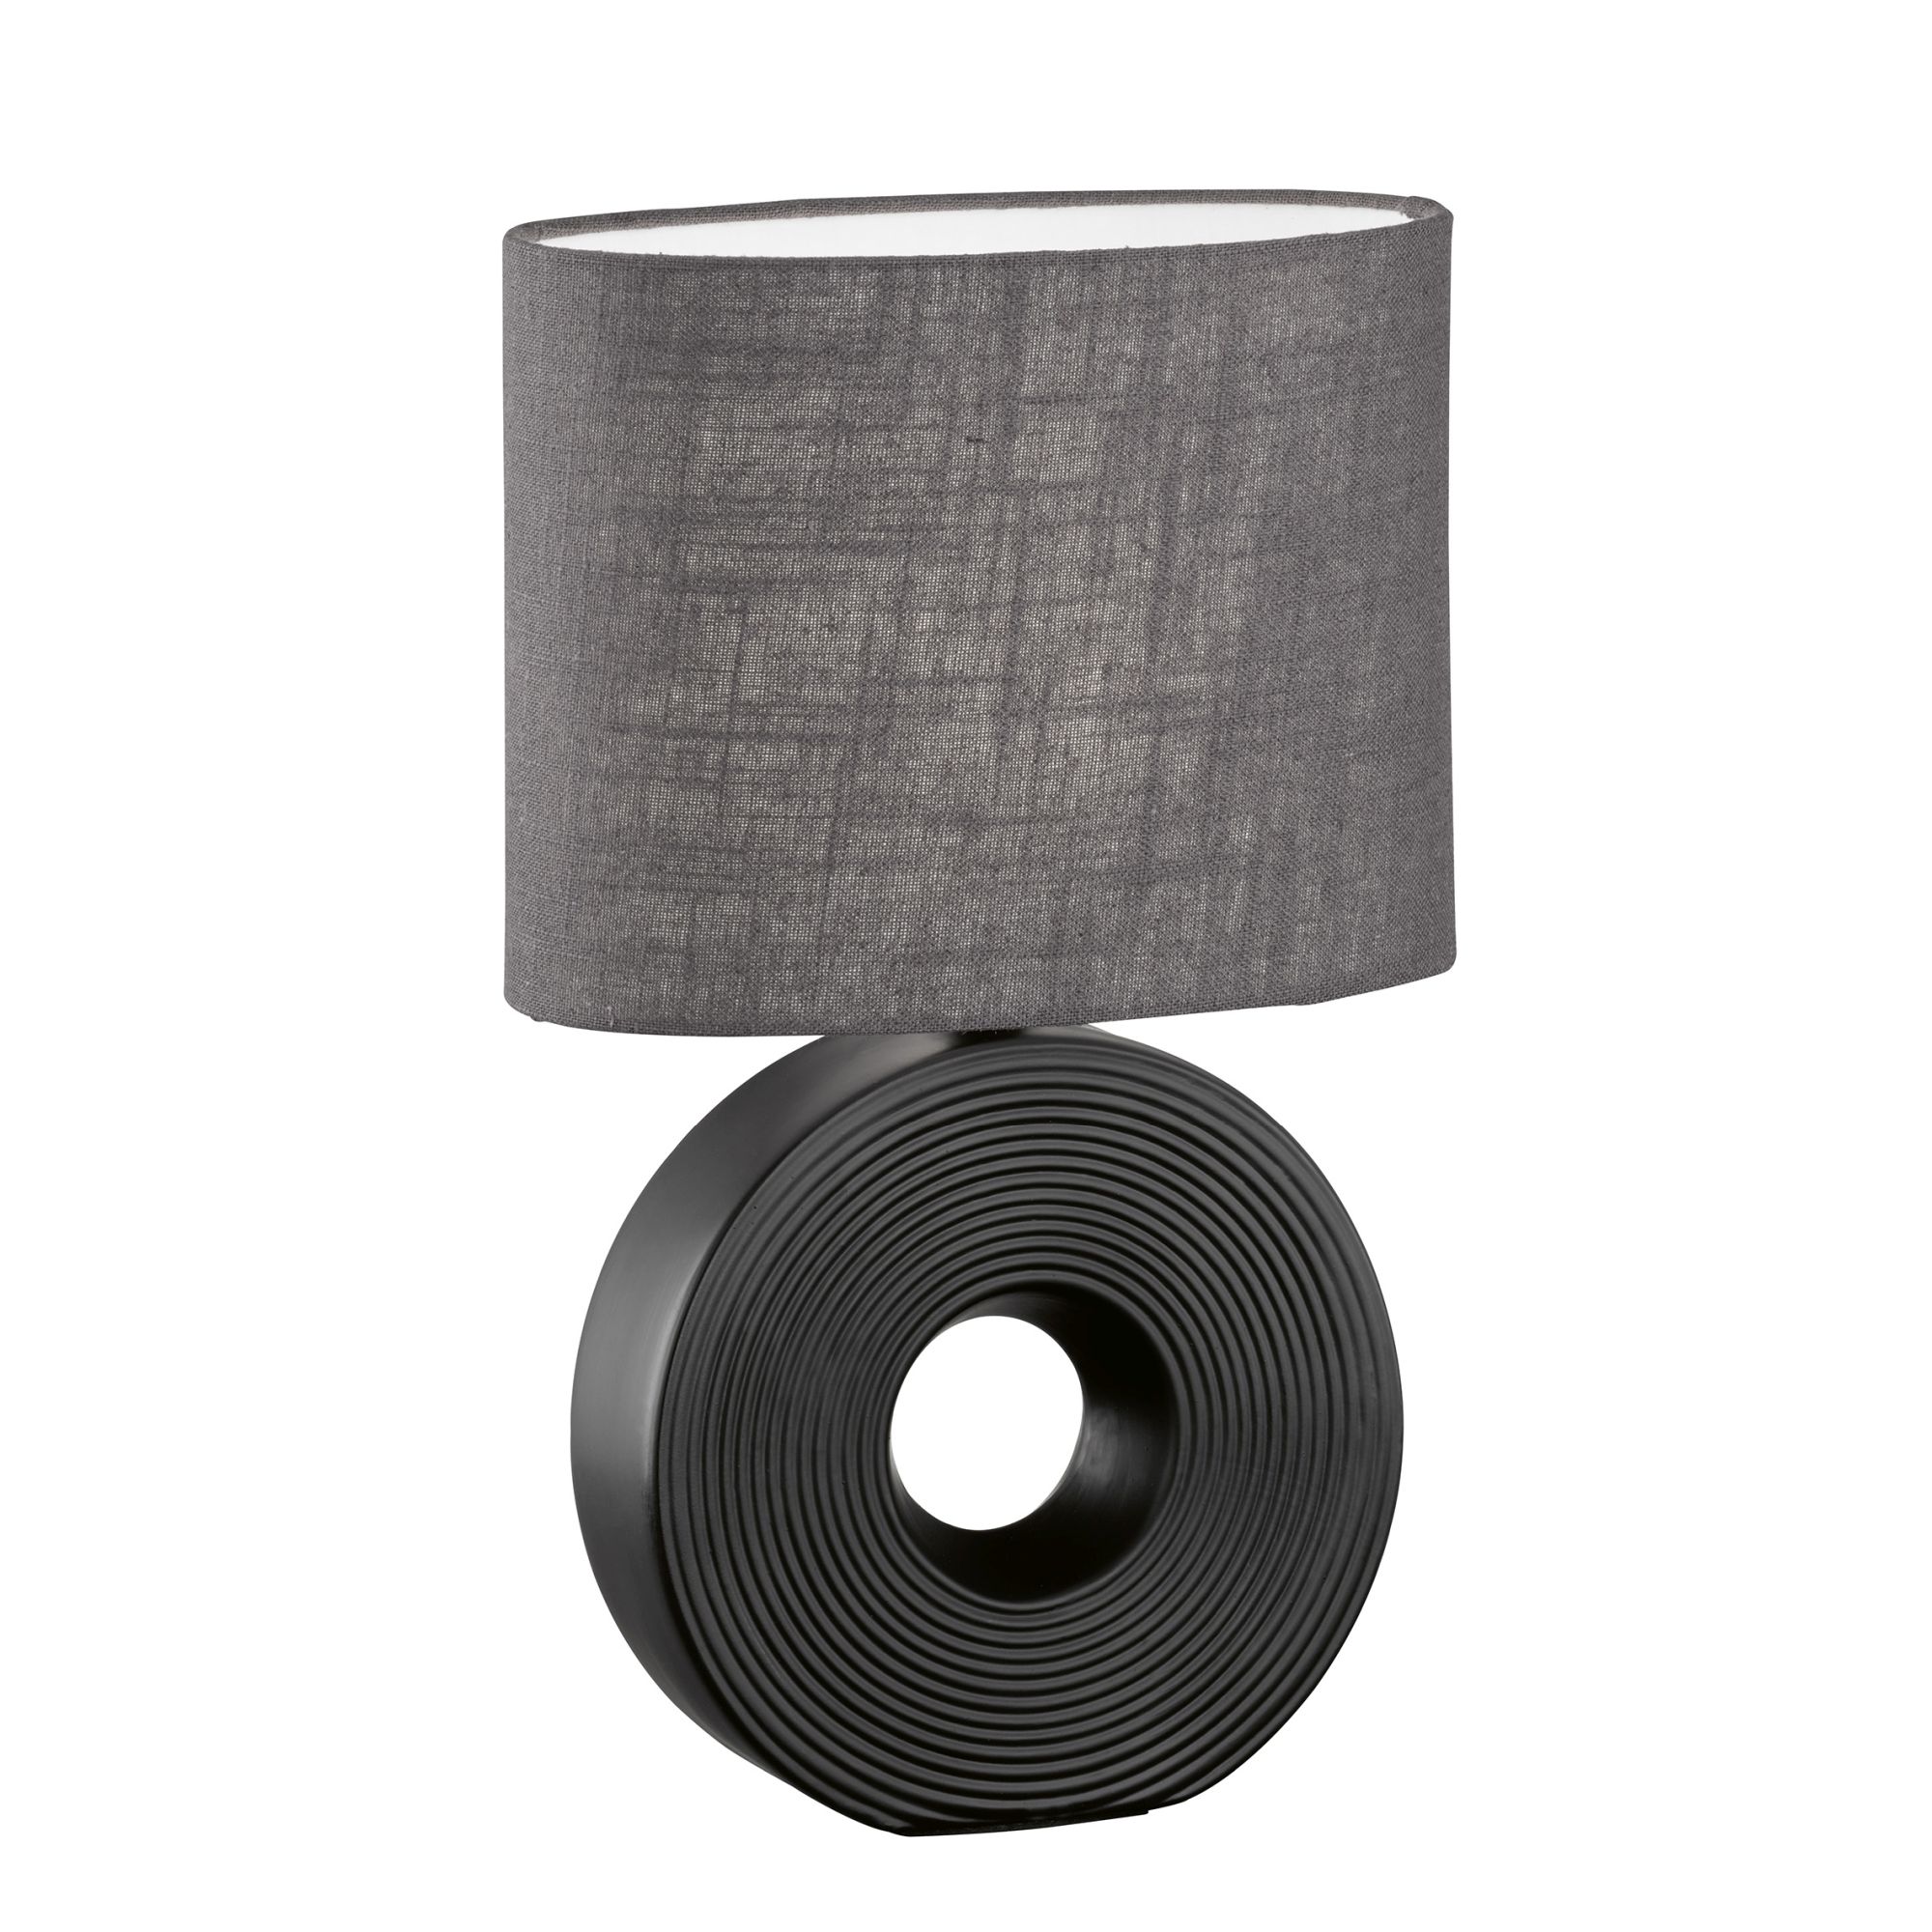 Tischlampe 'Eye' Textil-Tischleuchte Keramik Modern Wohnzimmerleuchte E14' A++ 